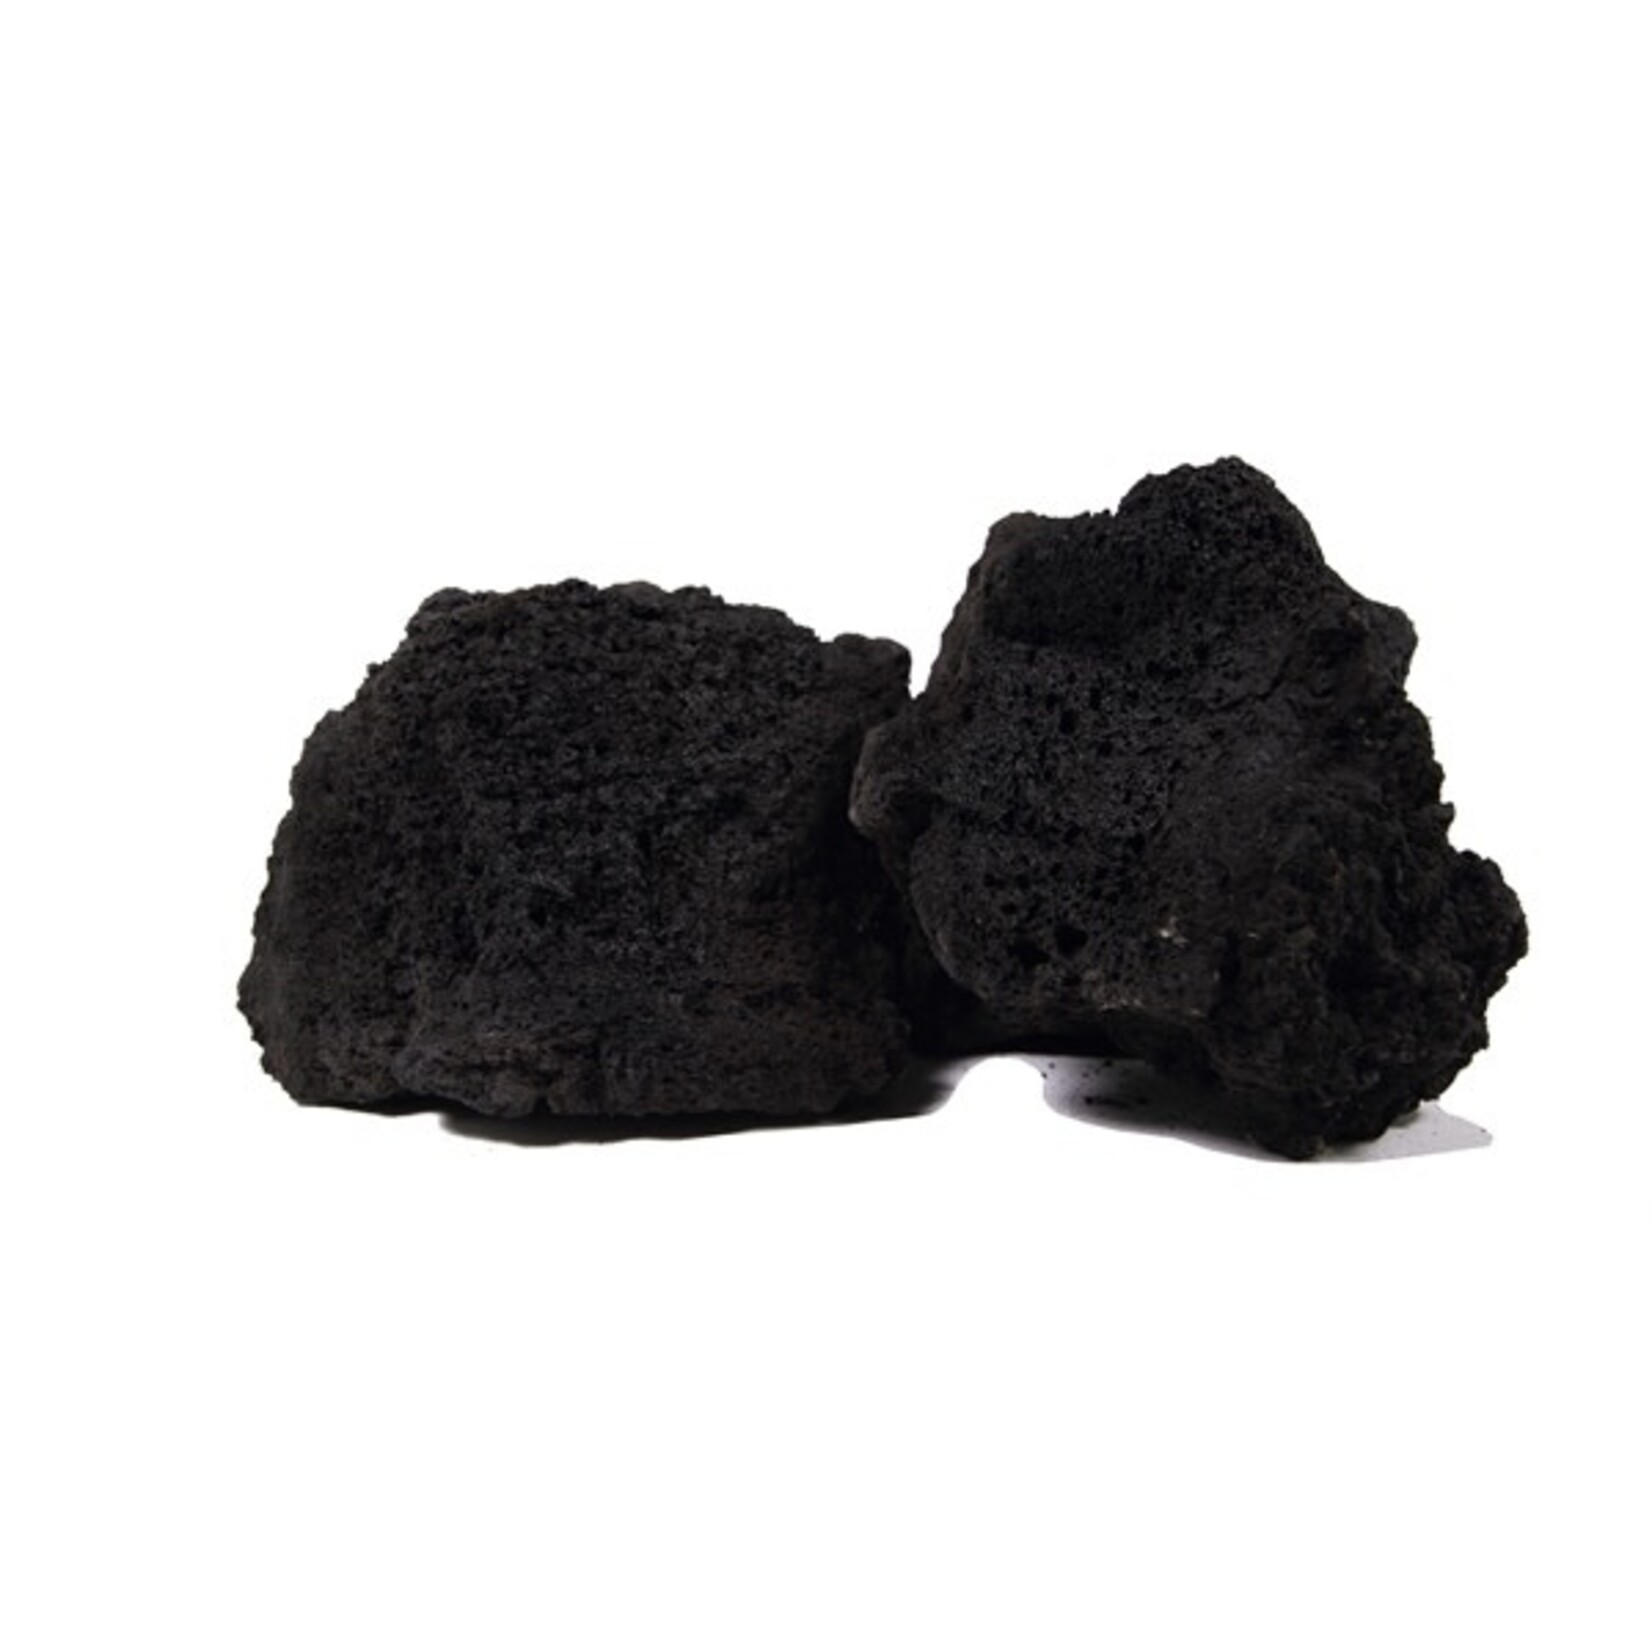 Dennerle Premium lava black m 10 stuks a 15-20 cm ps-034m